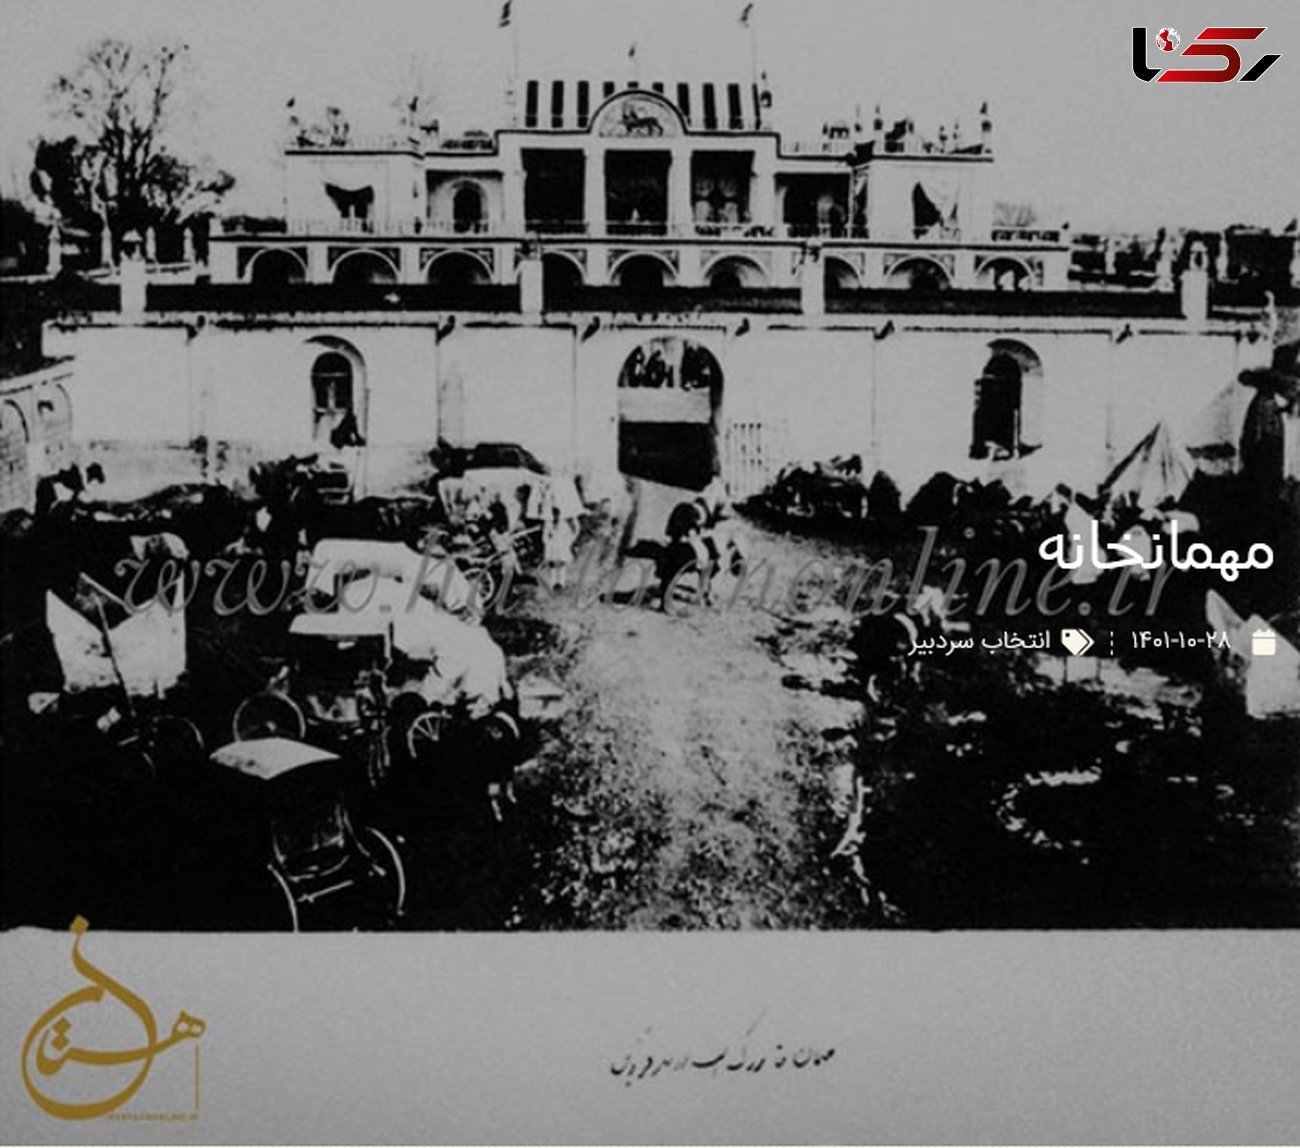 عکس قدیمی از مهمانخانه ای در قزوین